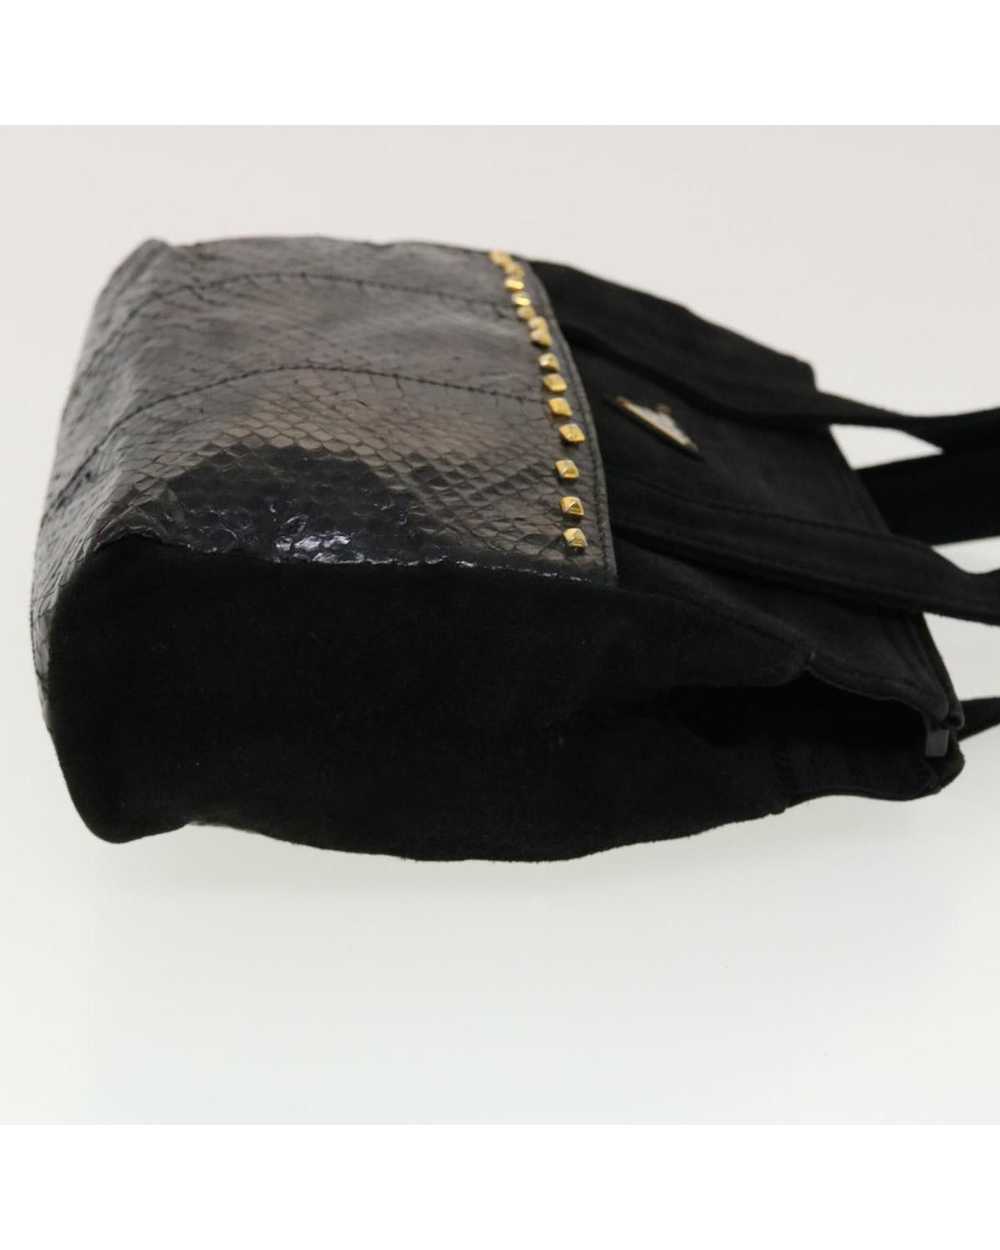 Prada Black Suede Hand Bag - image 3